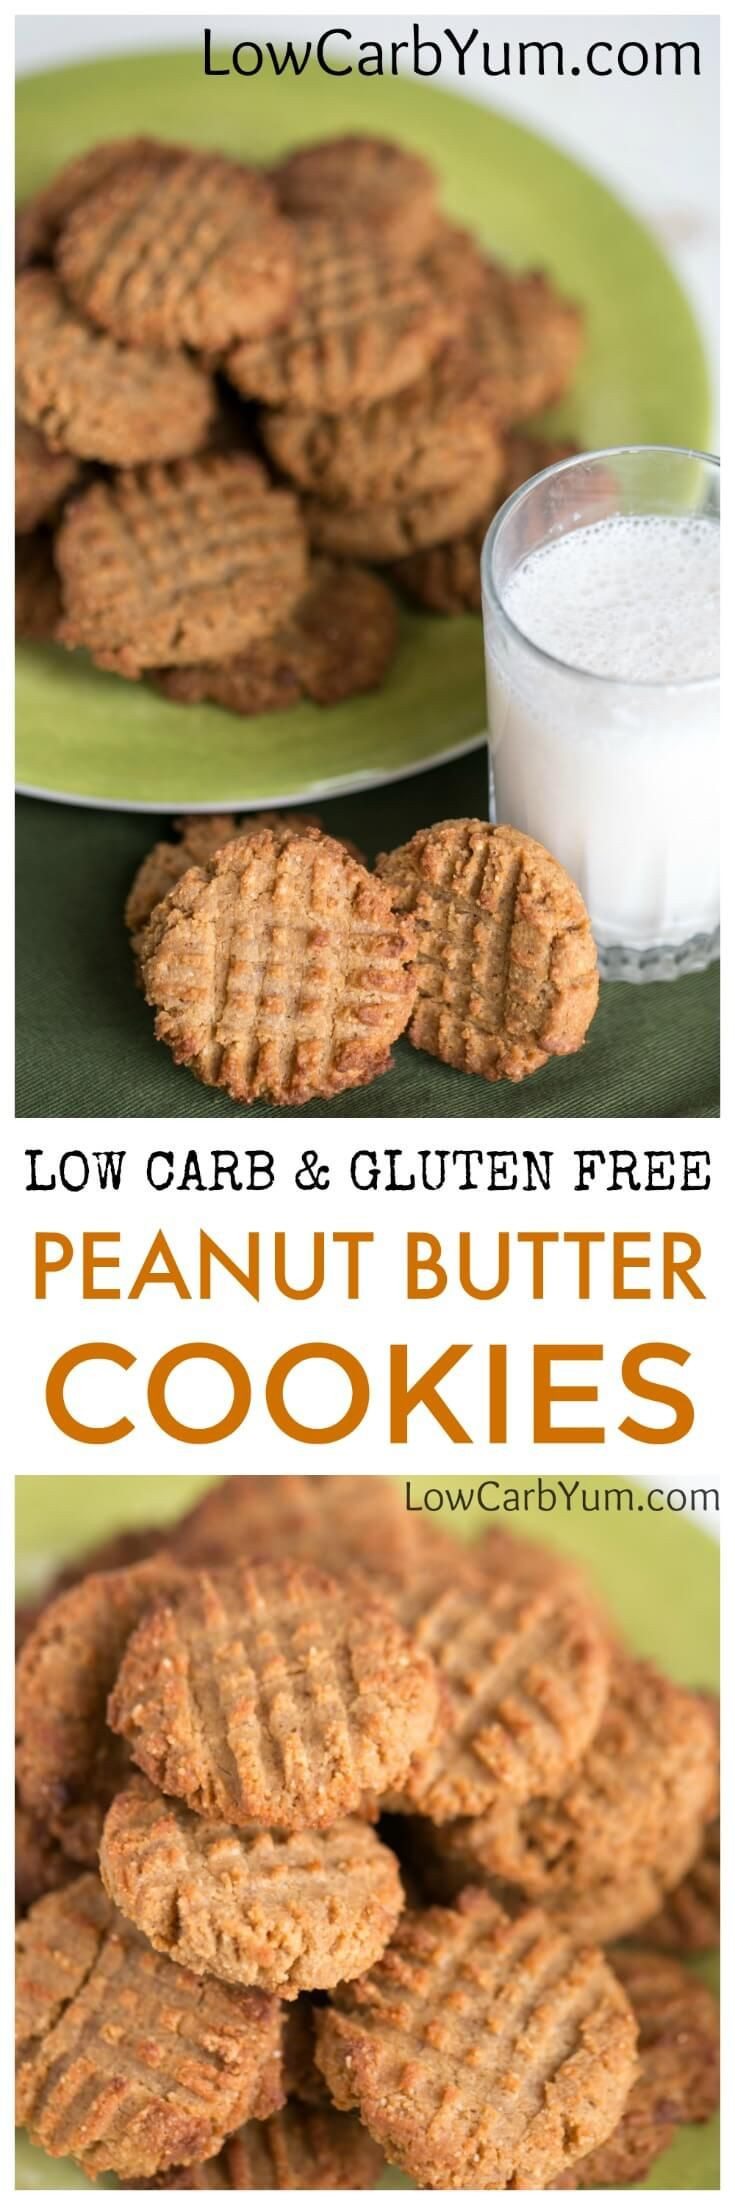 Keto Coconut Flour Peanut Butter Cookies
 Best 25 Keto peanut butter cookies ideas on Pinterest